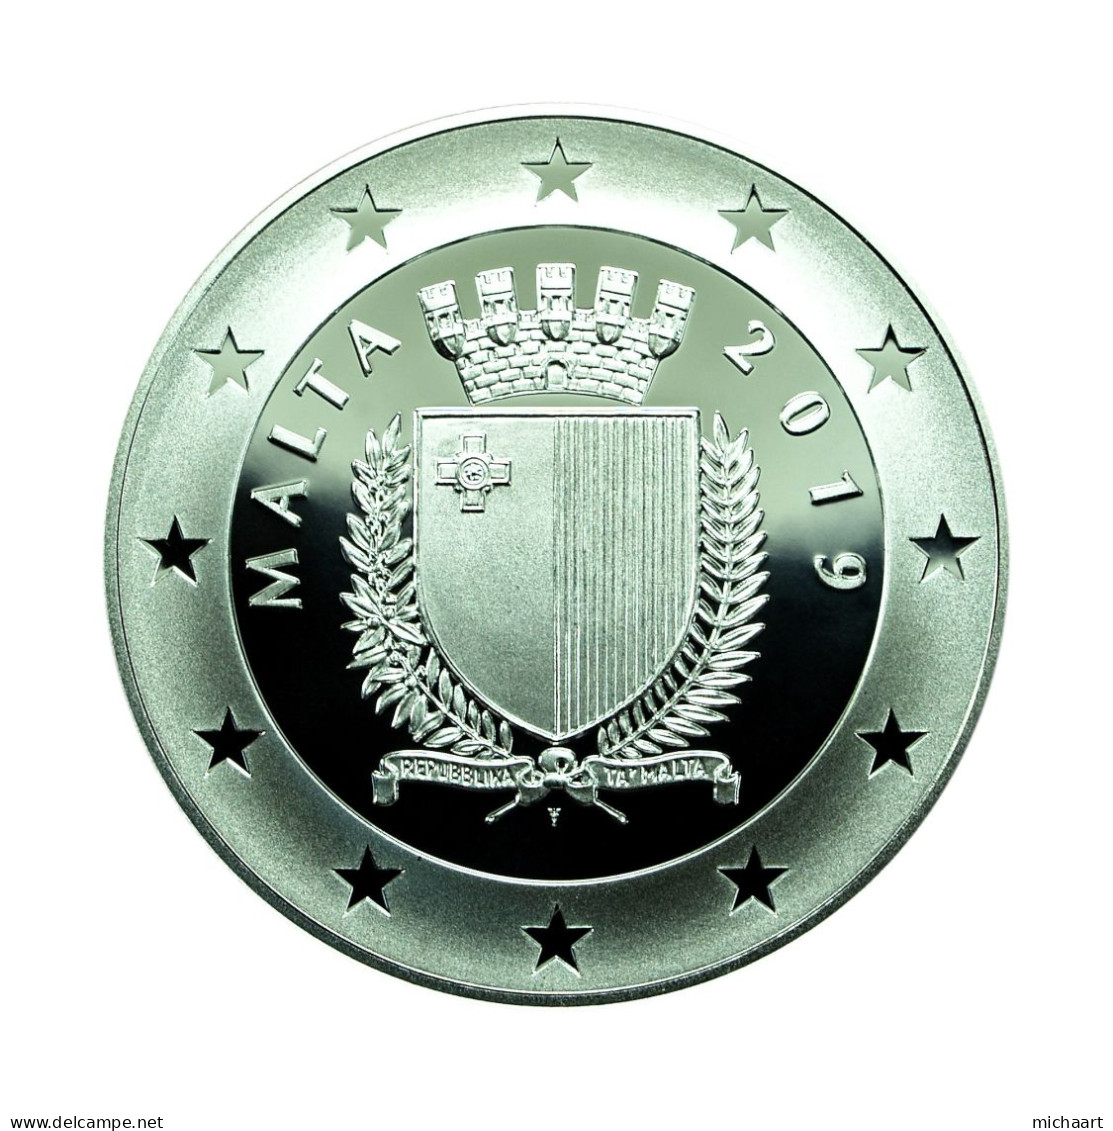 Malta Silver 2019 10 Euro Coin & Foil Stamp Proof Sette Giugno Riots 04180 - Malta